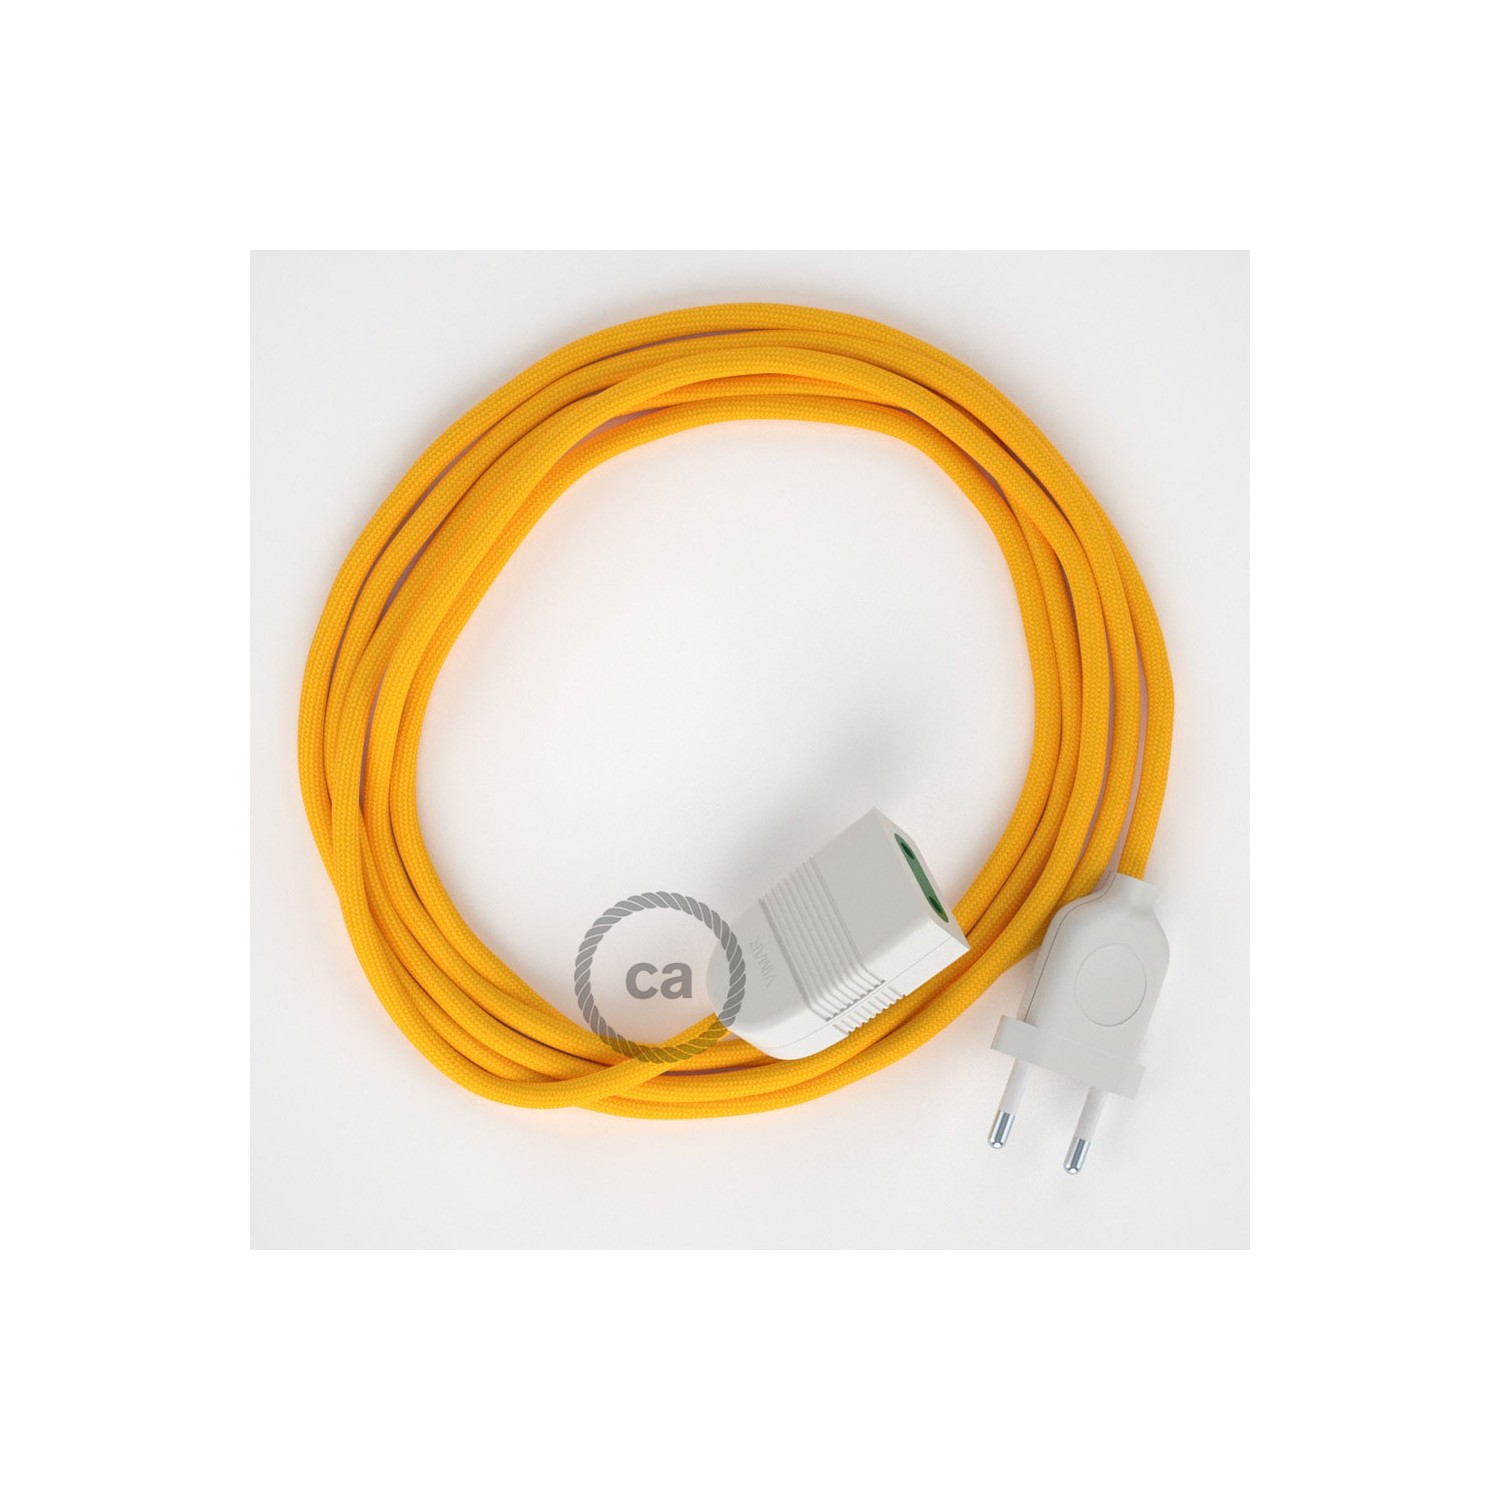 Rallonge électrique avec câble textile RM10 Effet Soie Jaune 2P 10A Made in Italy.